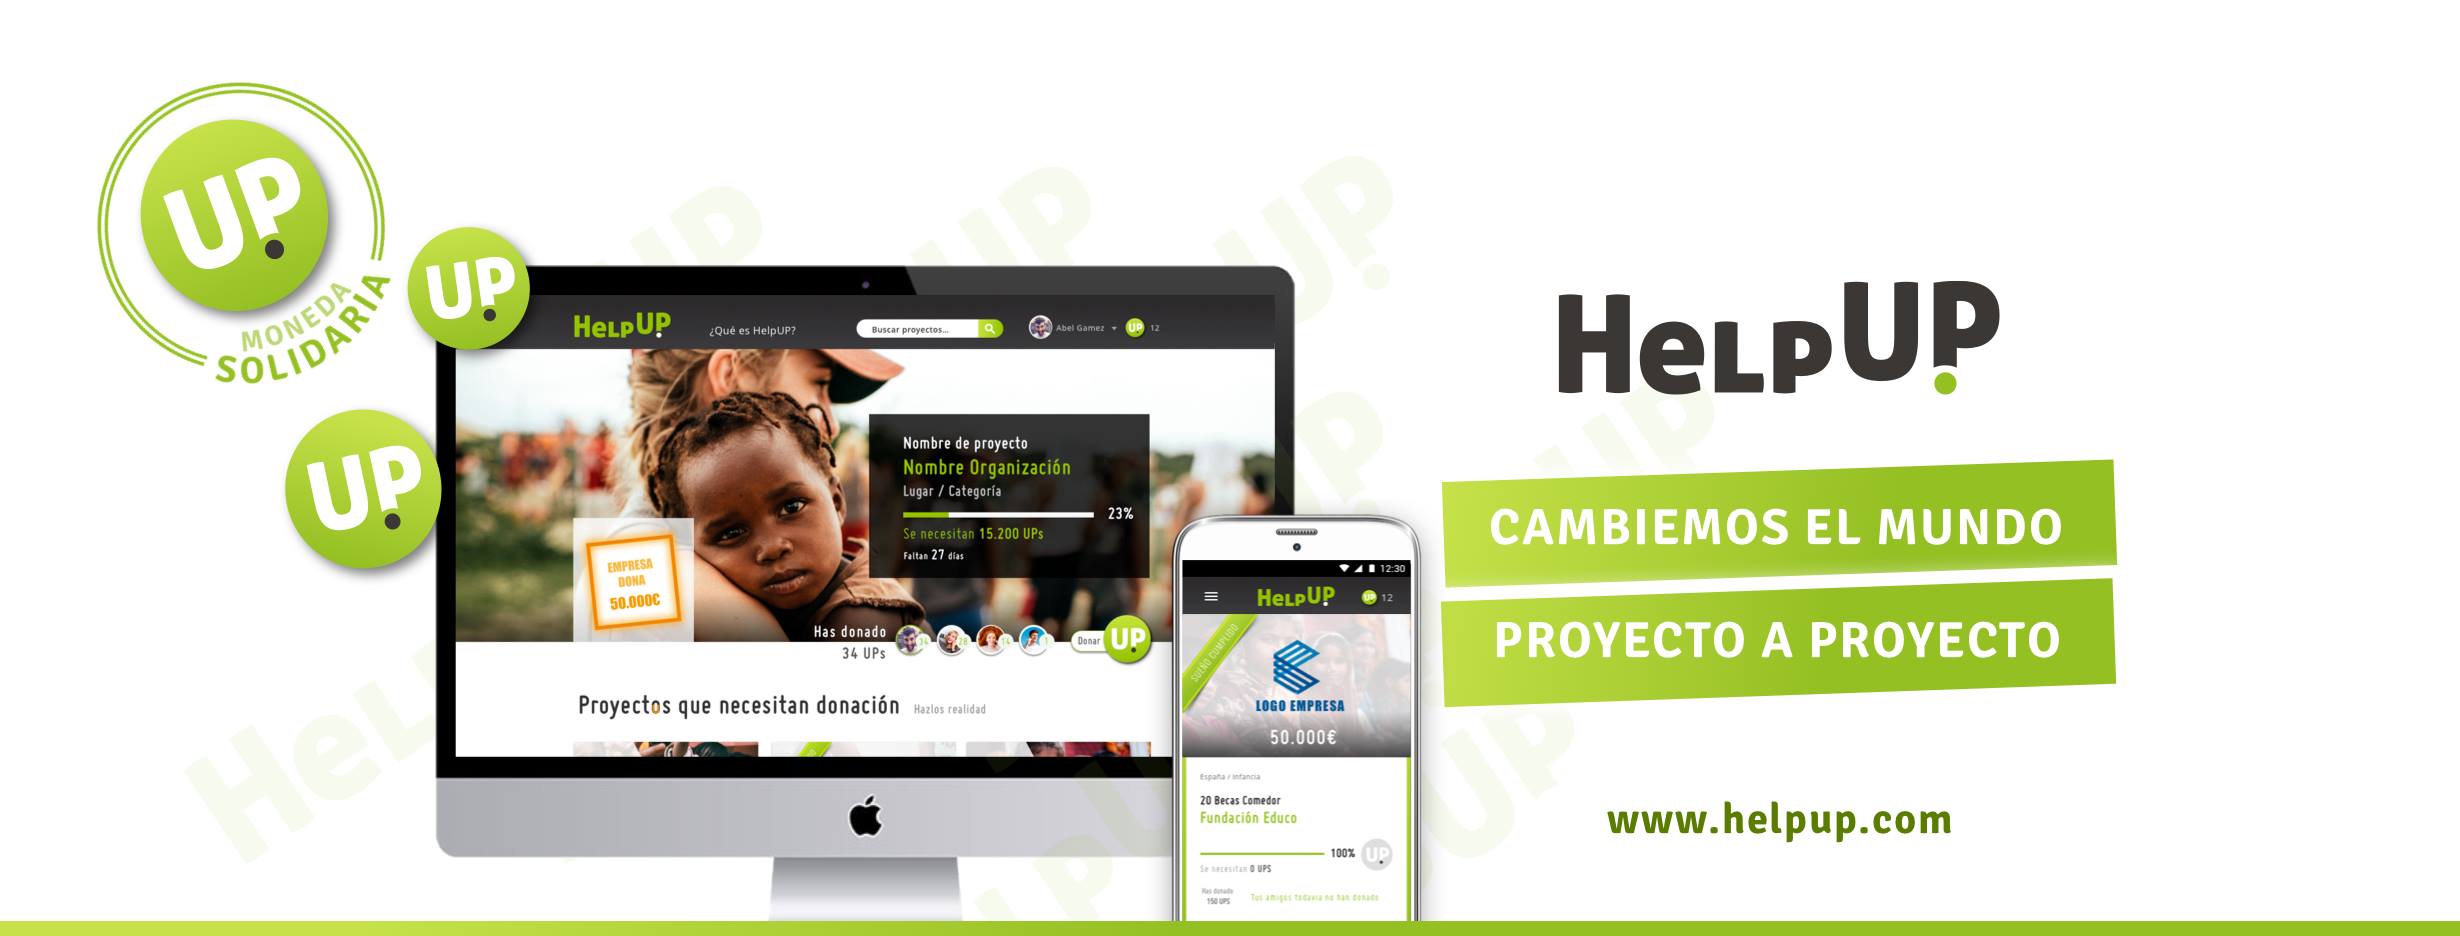 HelpUp, una red social de voluntariado que cambiará el mundo